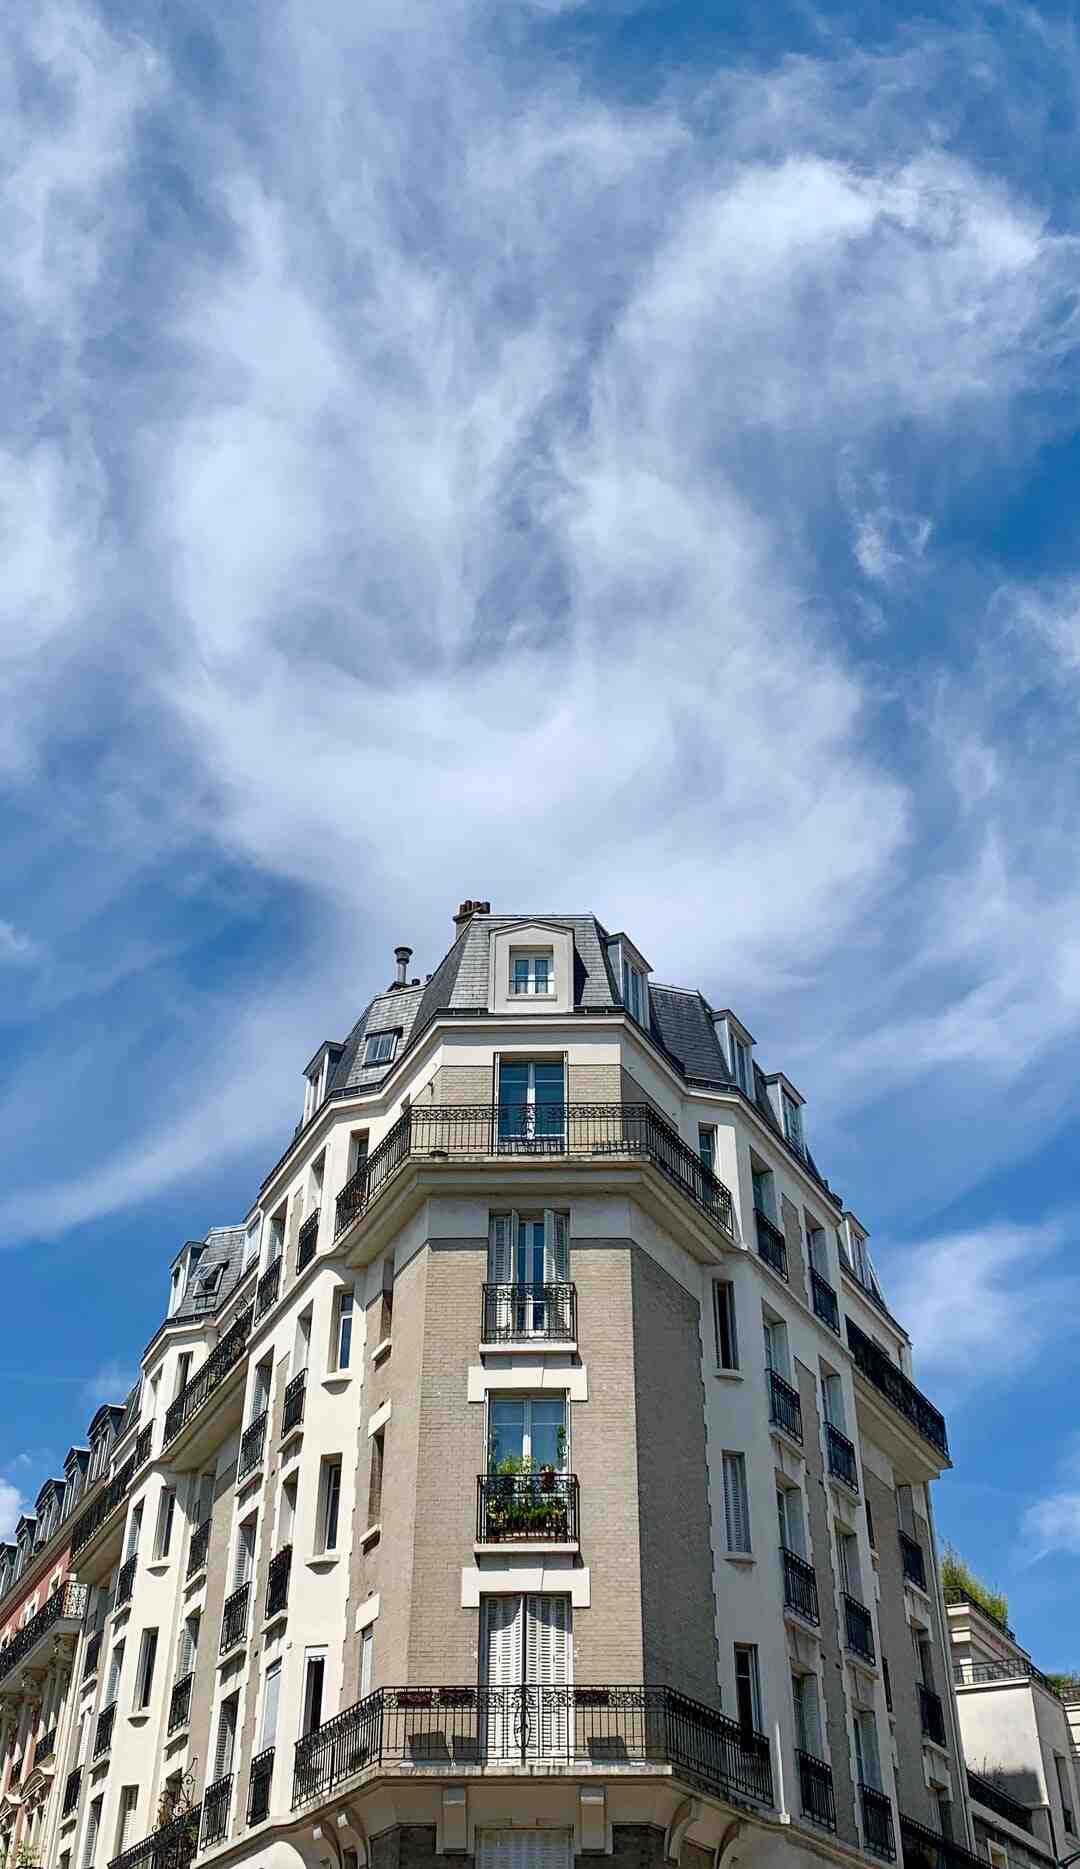 Où se trouve l'immobilier le moins cher en France ?